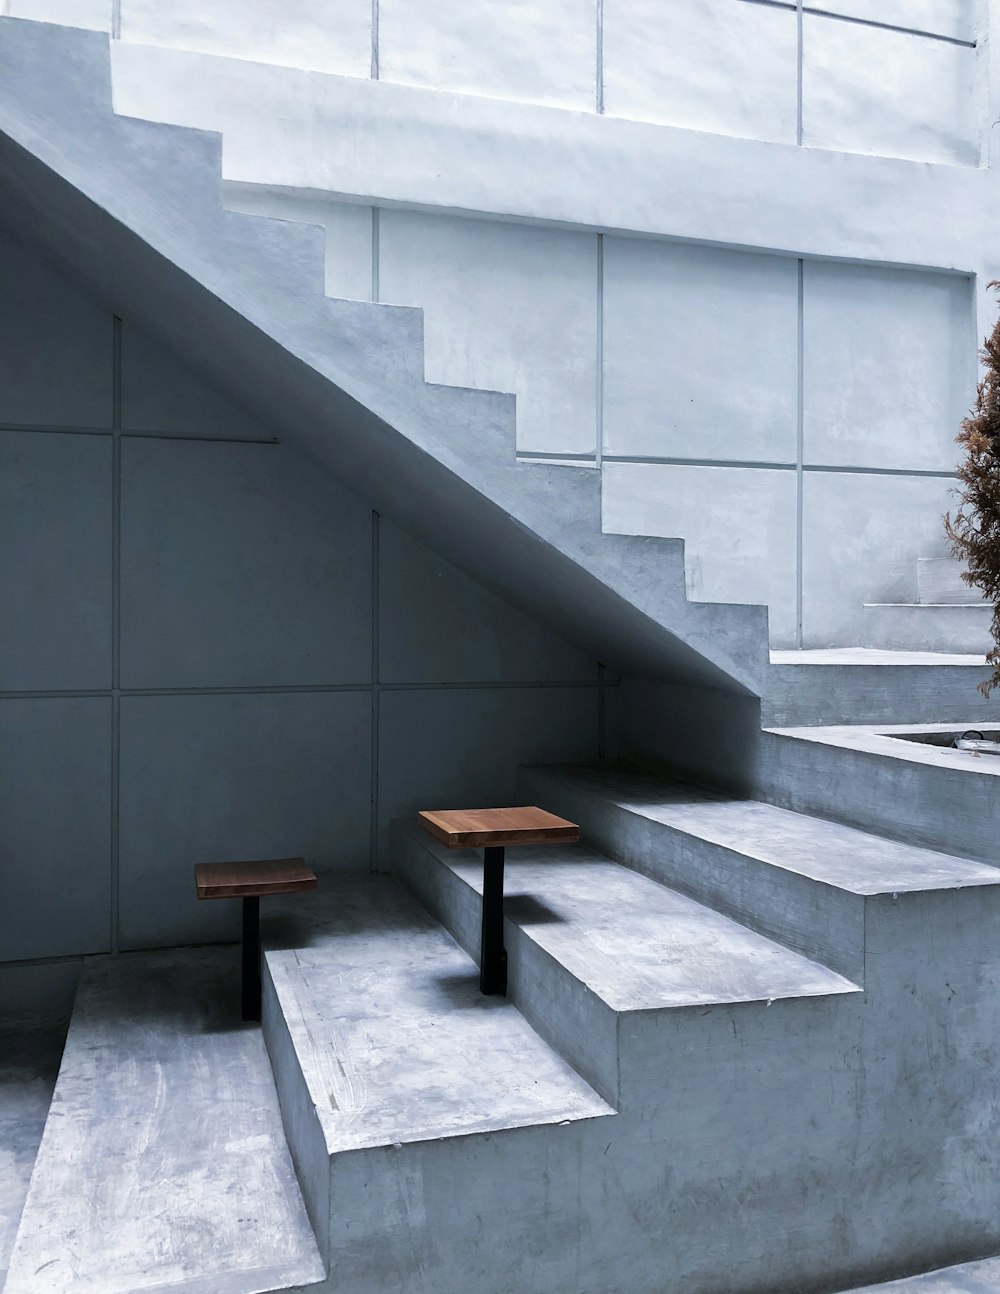 회색 콘크리트 계단에 갈색 나무 테이블